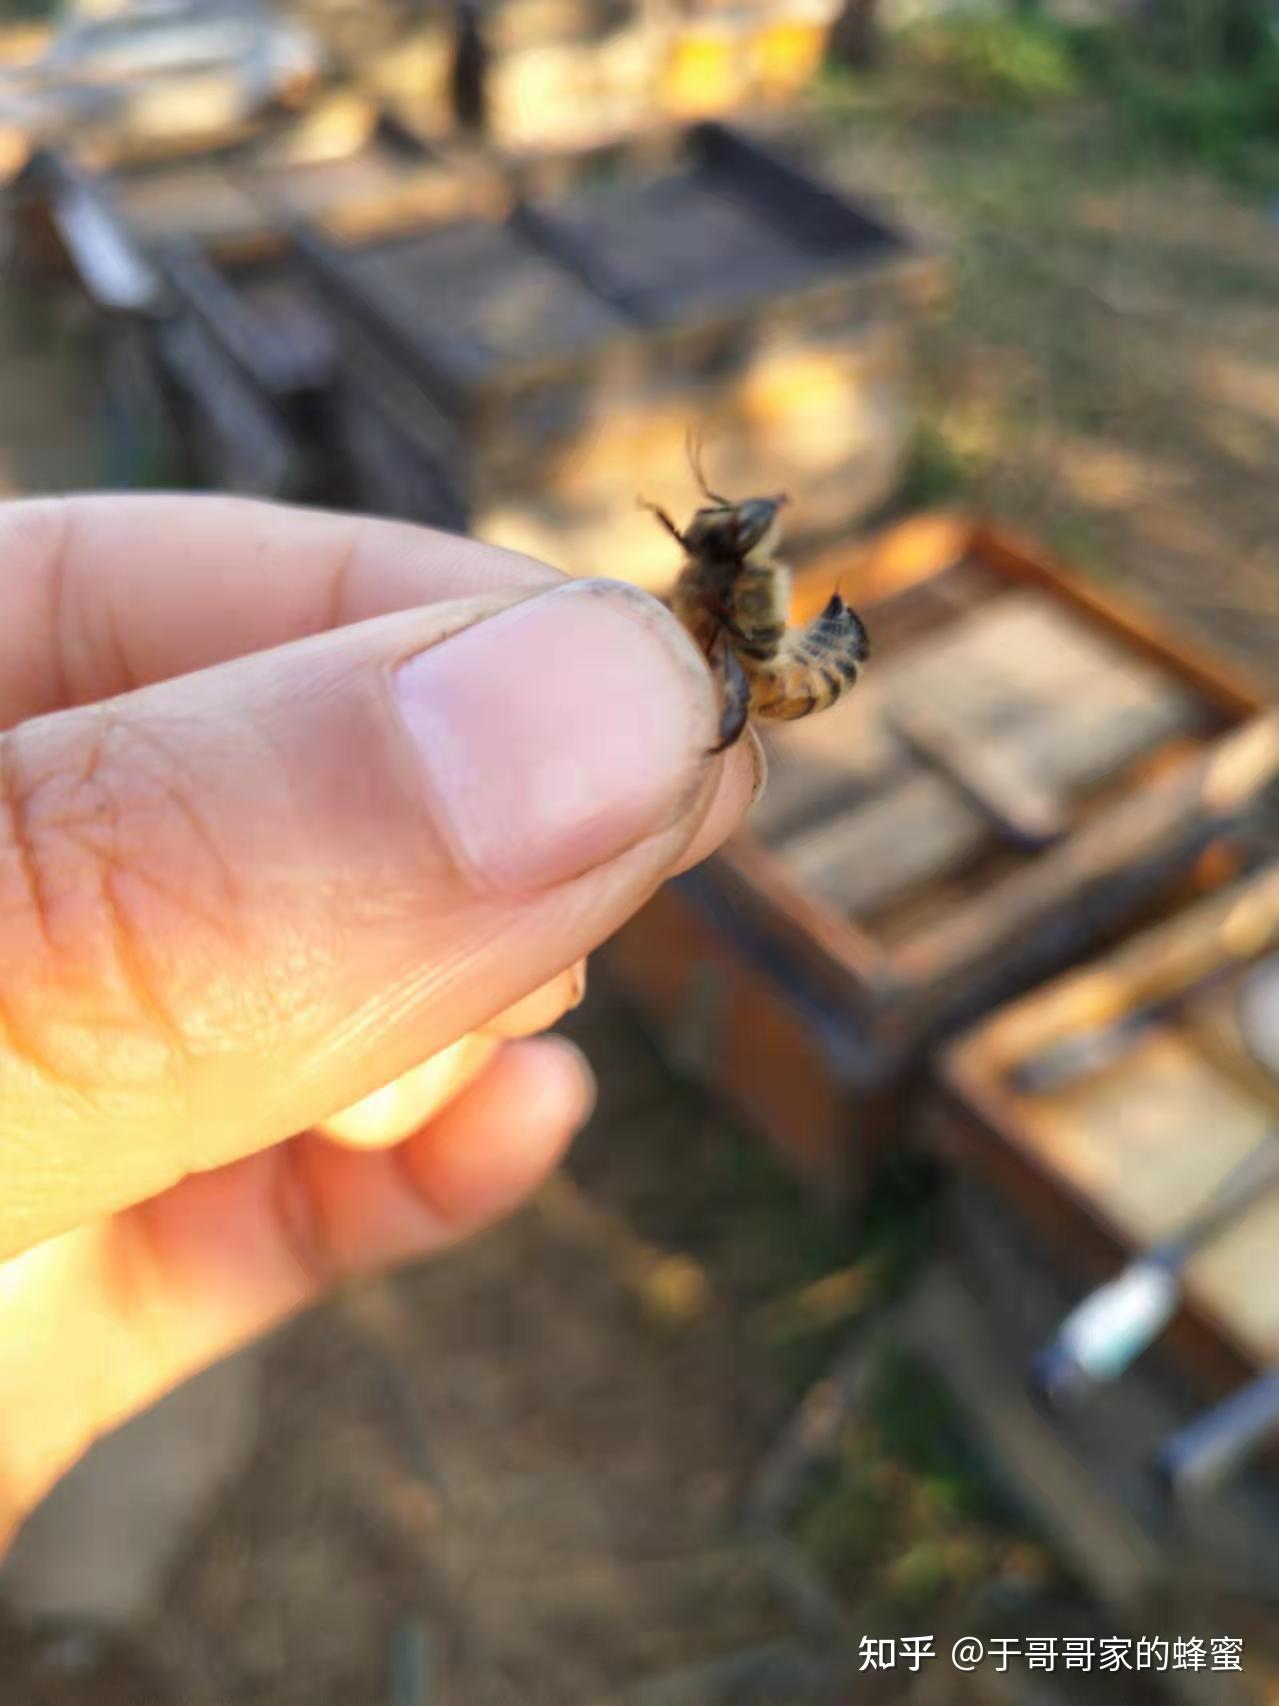 微風下午 : 蜜蜂叮咬過敏：被蜜蜂叮到會怎樣嗎？